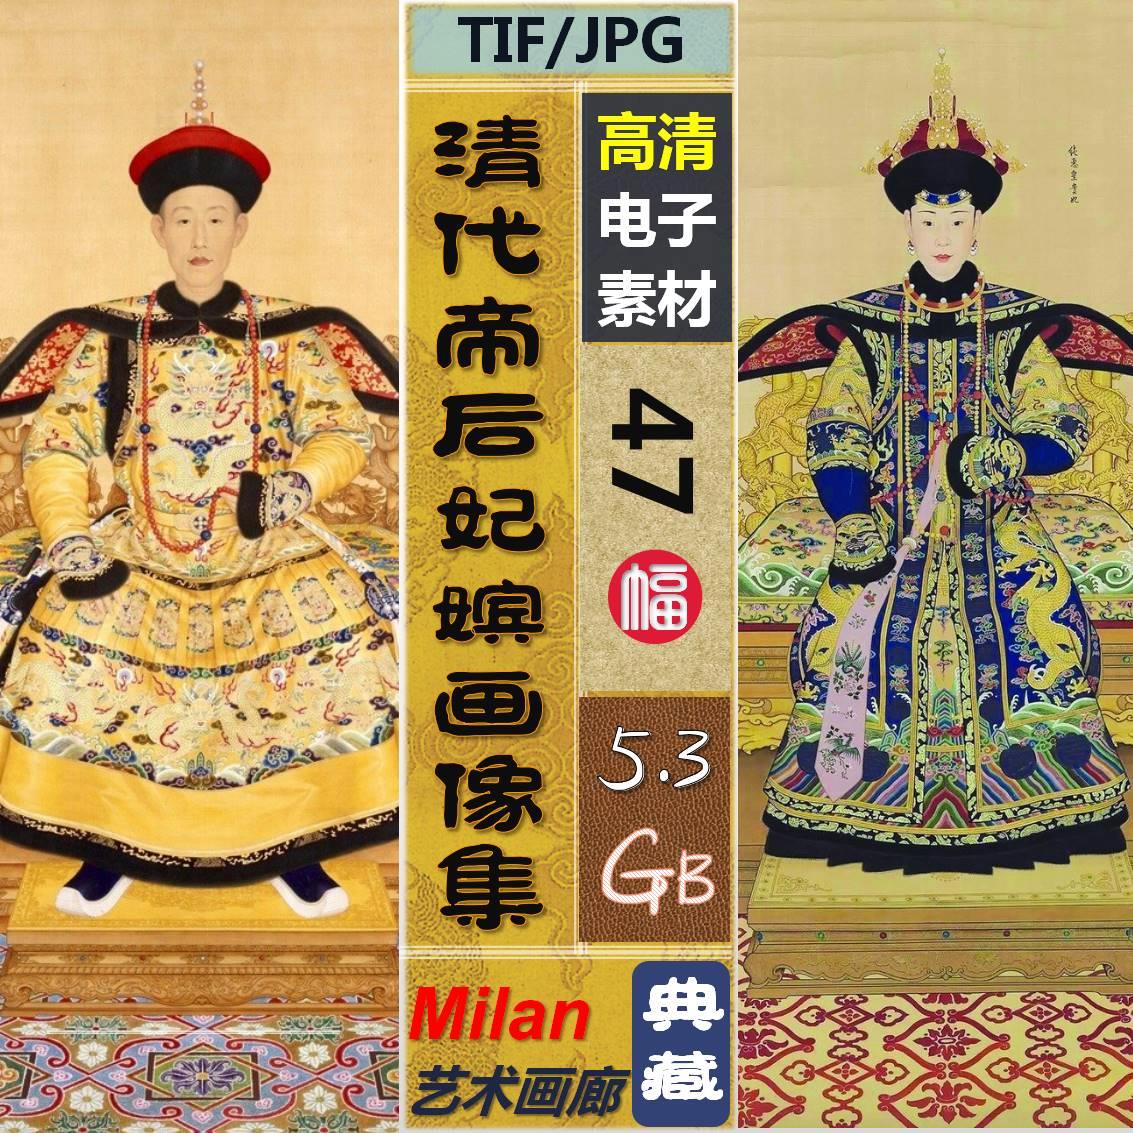 中国 清朝 清代 皇帝 帝王 皇后 画像电子高清图片临摹素材